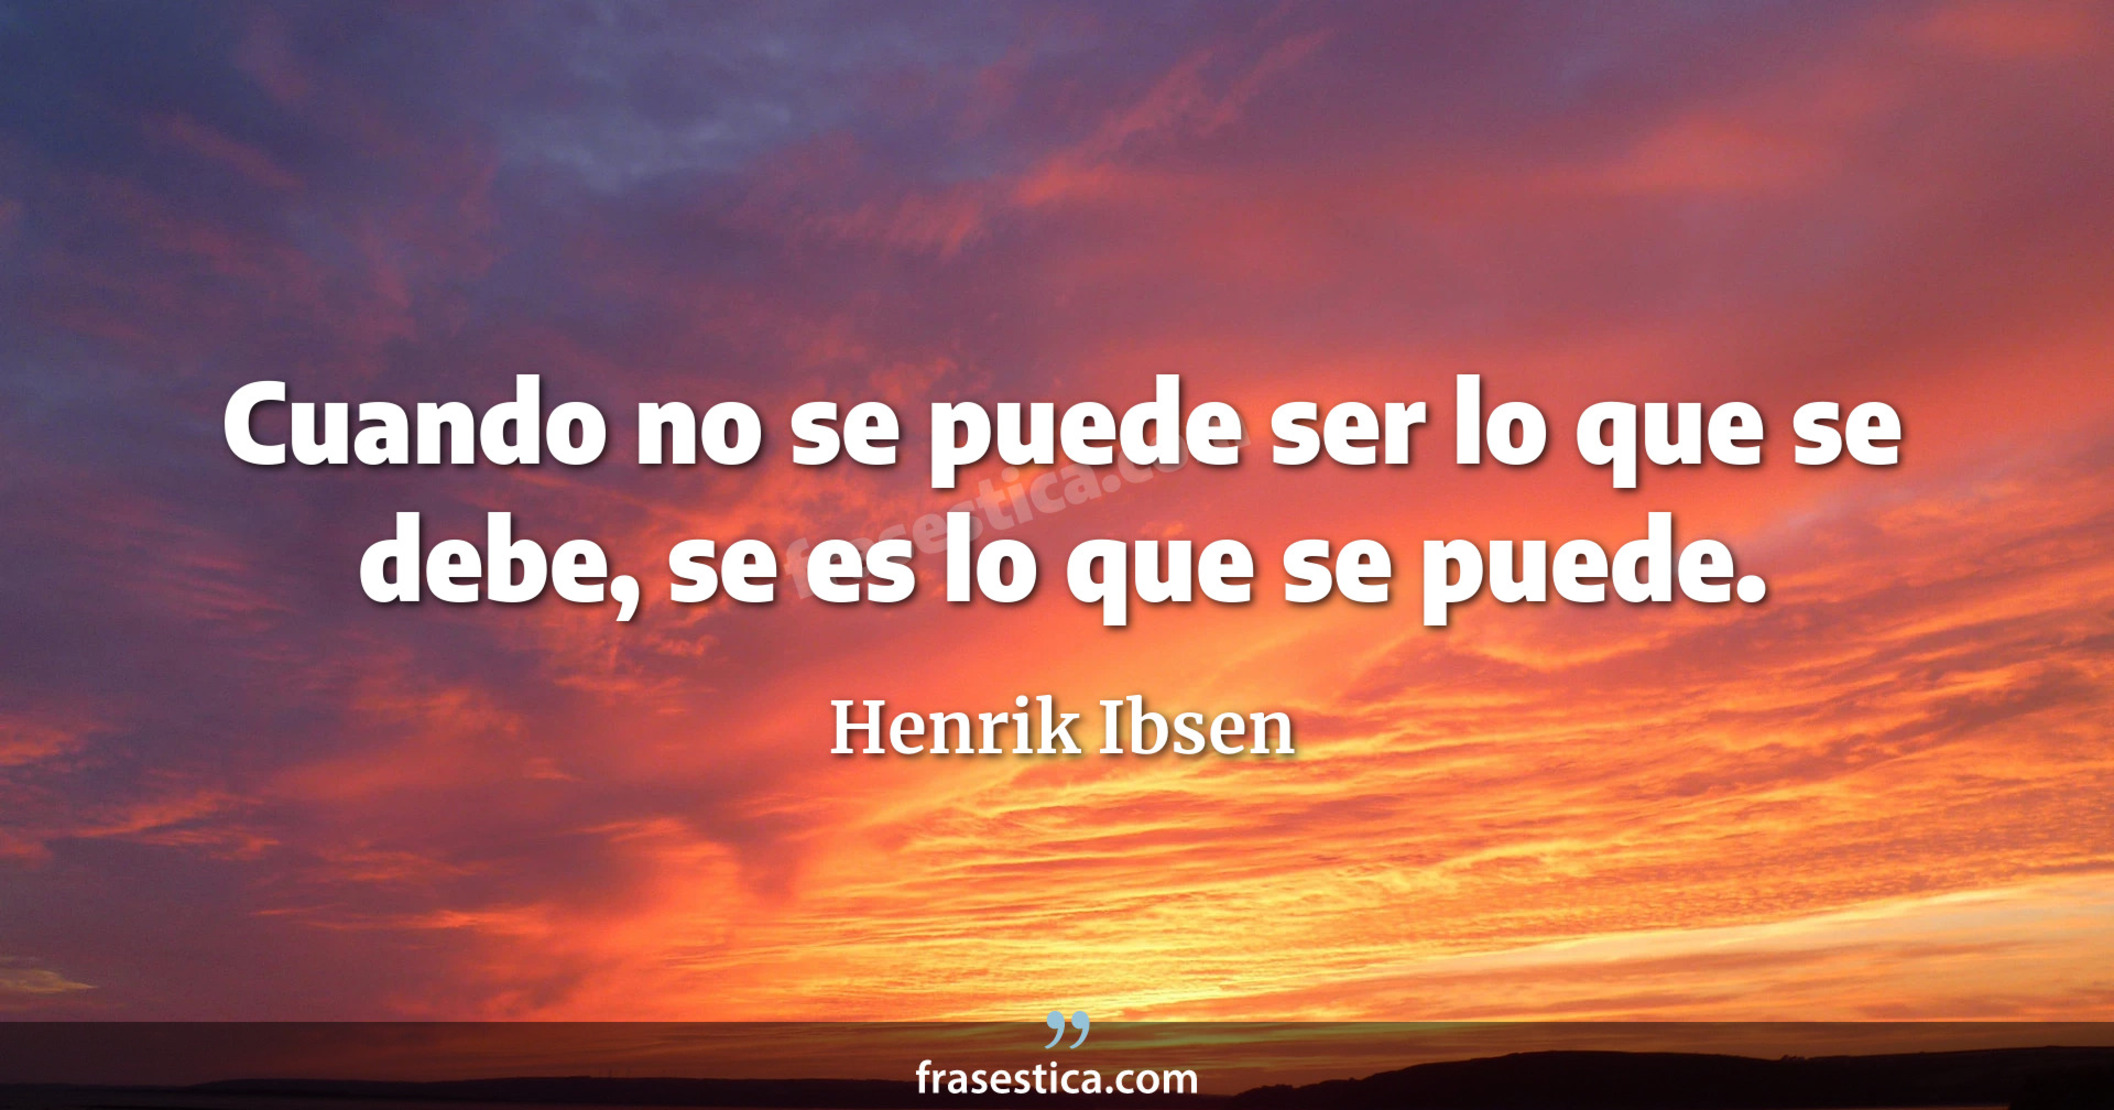 Cuando no se puede ser lo que se debe, se es lo que se puede. - Henrik Ibsen